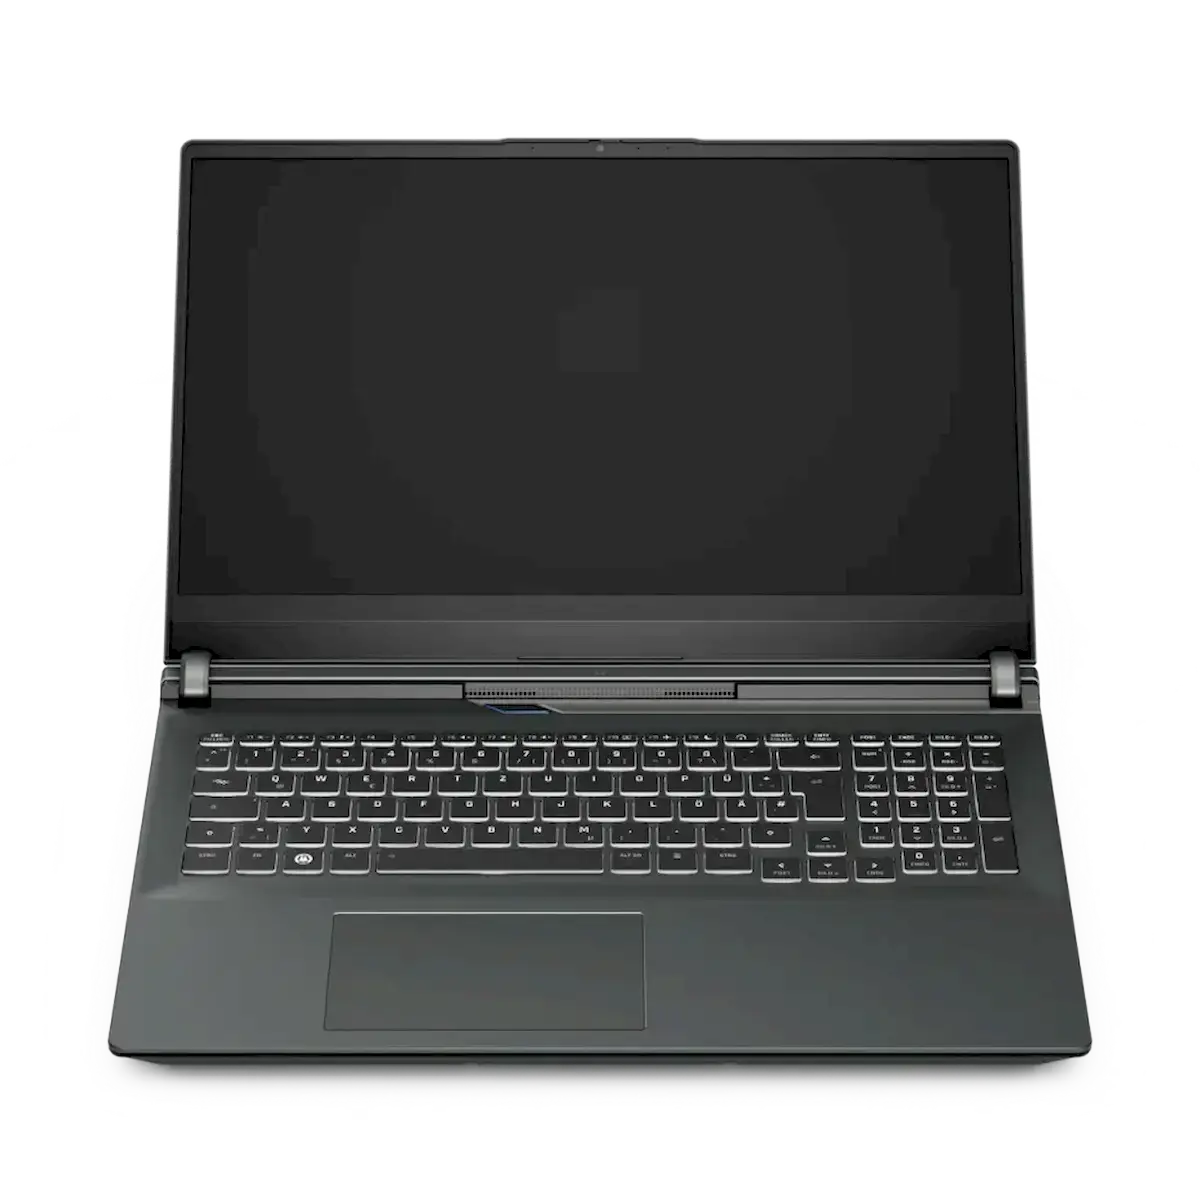 TUXEDO Sirius 16, o primeiro laptop gamer com AMD da TUXEDO